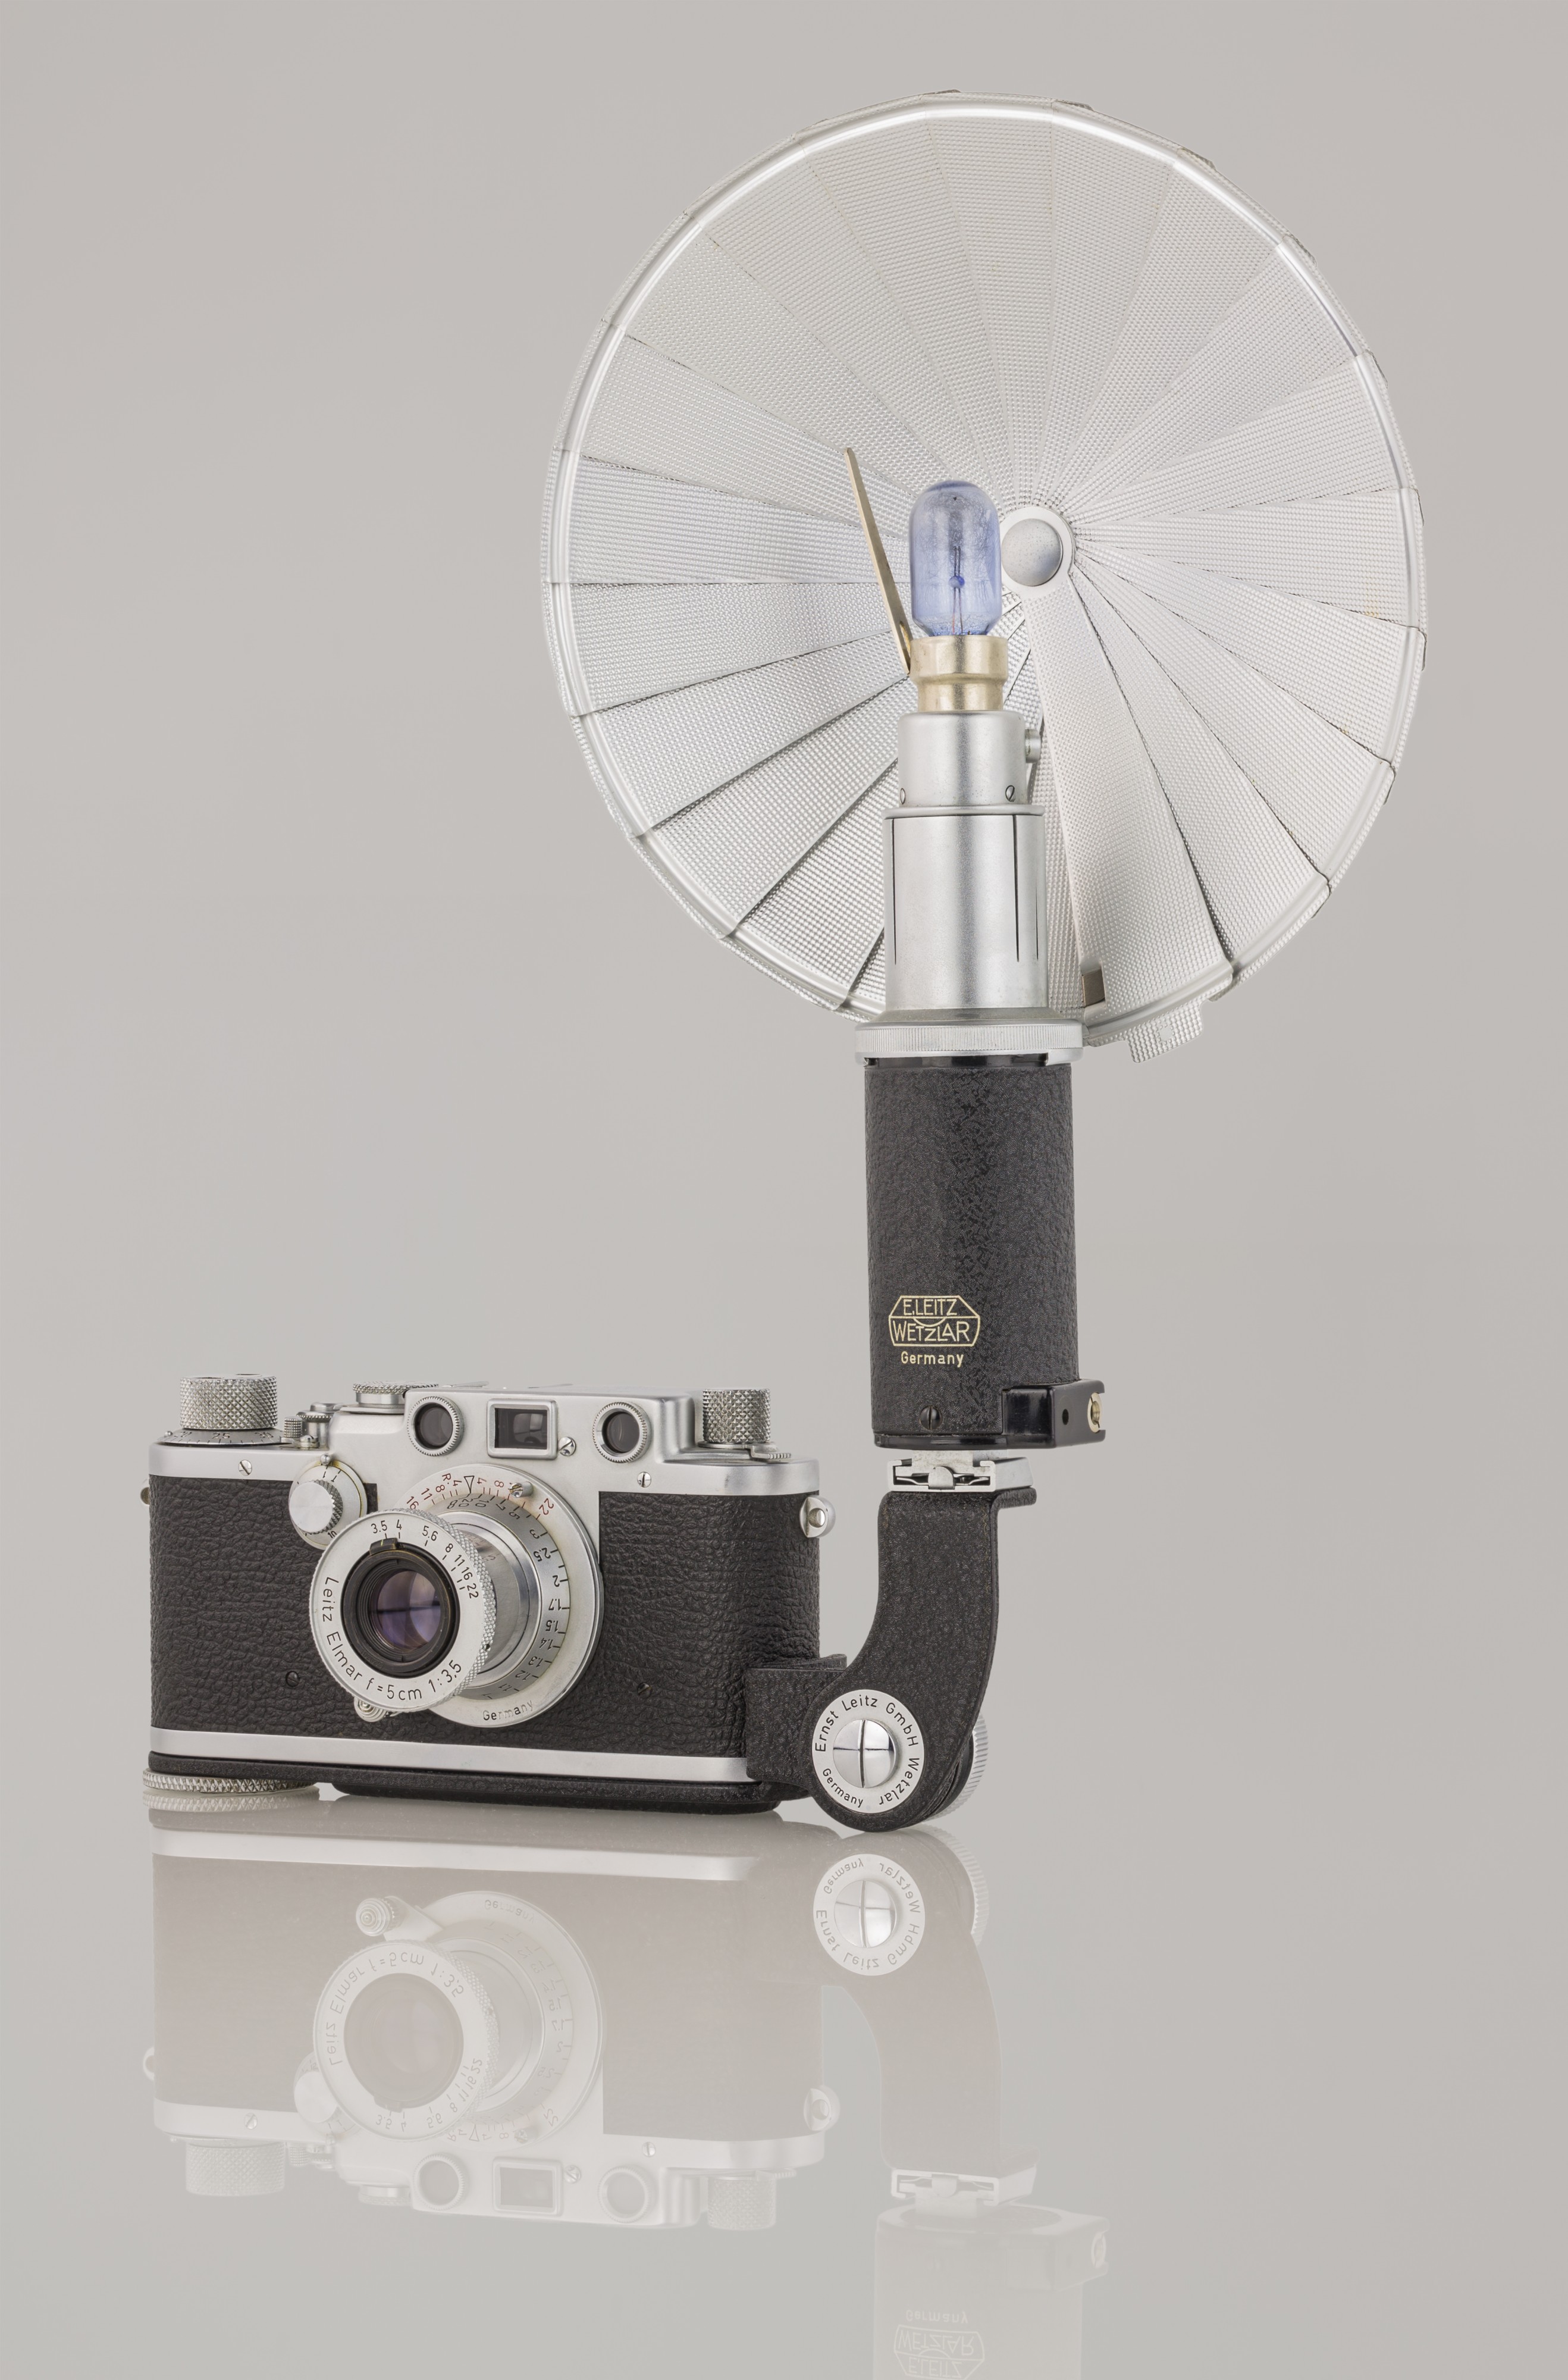 LEI0440 19o Leica IIIf chrom - Sn. 580566 1951-52-M39 front view mit Stabblitzleuchte-6627 hf